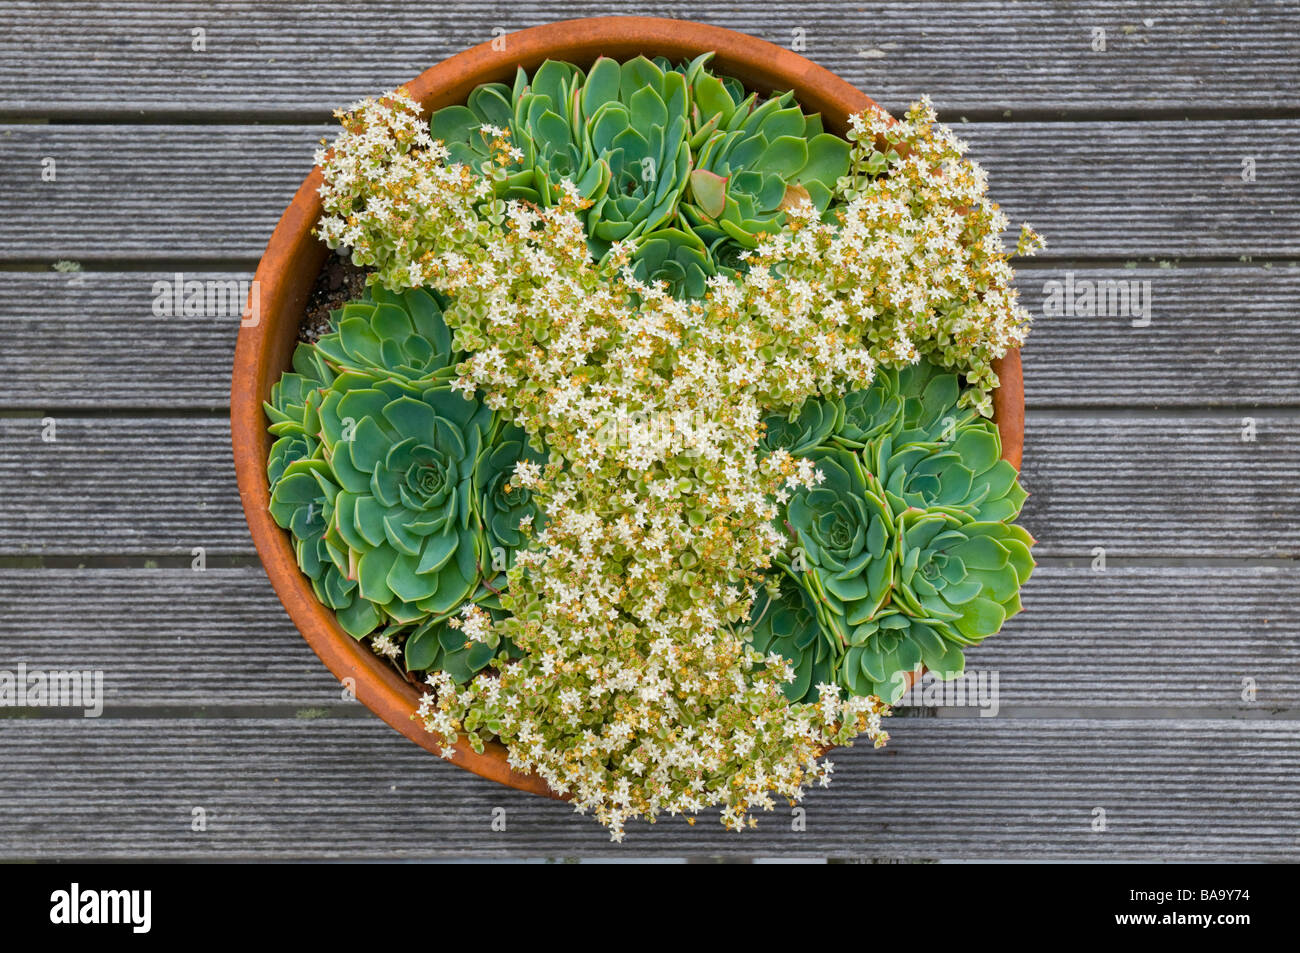 Chambre poireaux et marginalia crassula minuta Albamarginata les succulentes disposées en pot en terre cuite motif Banque D'Images